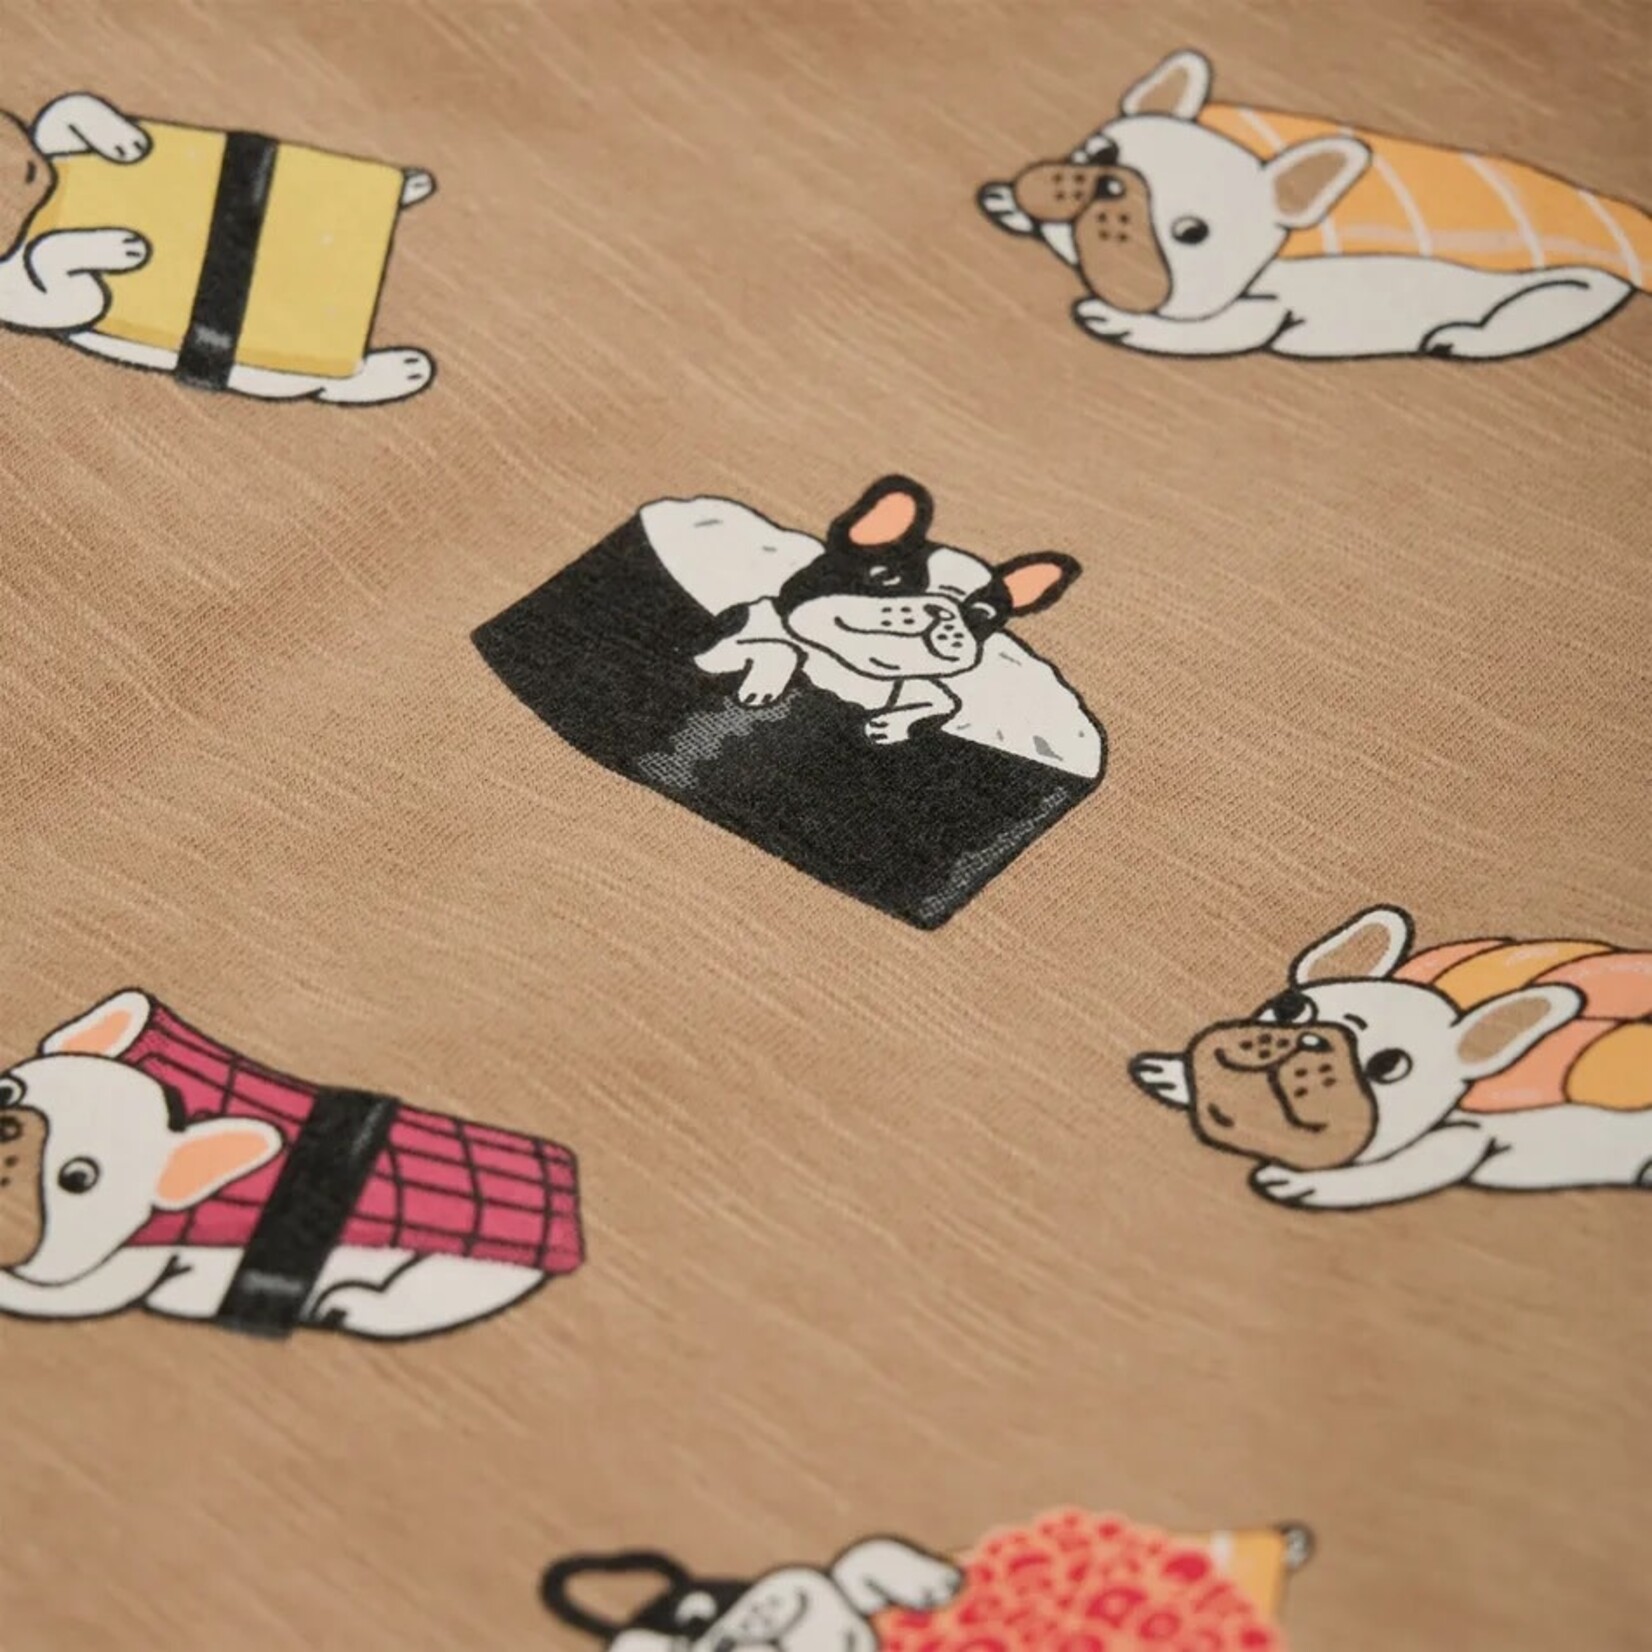 Minymo MINYMO - T-shirt brun beige avec imprimé de 9 chiens sushis